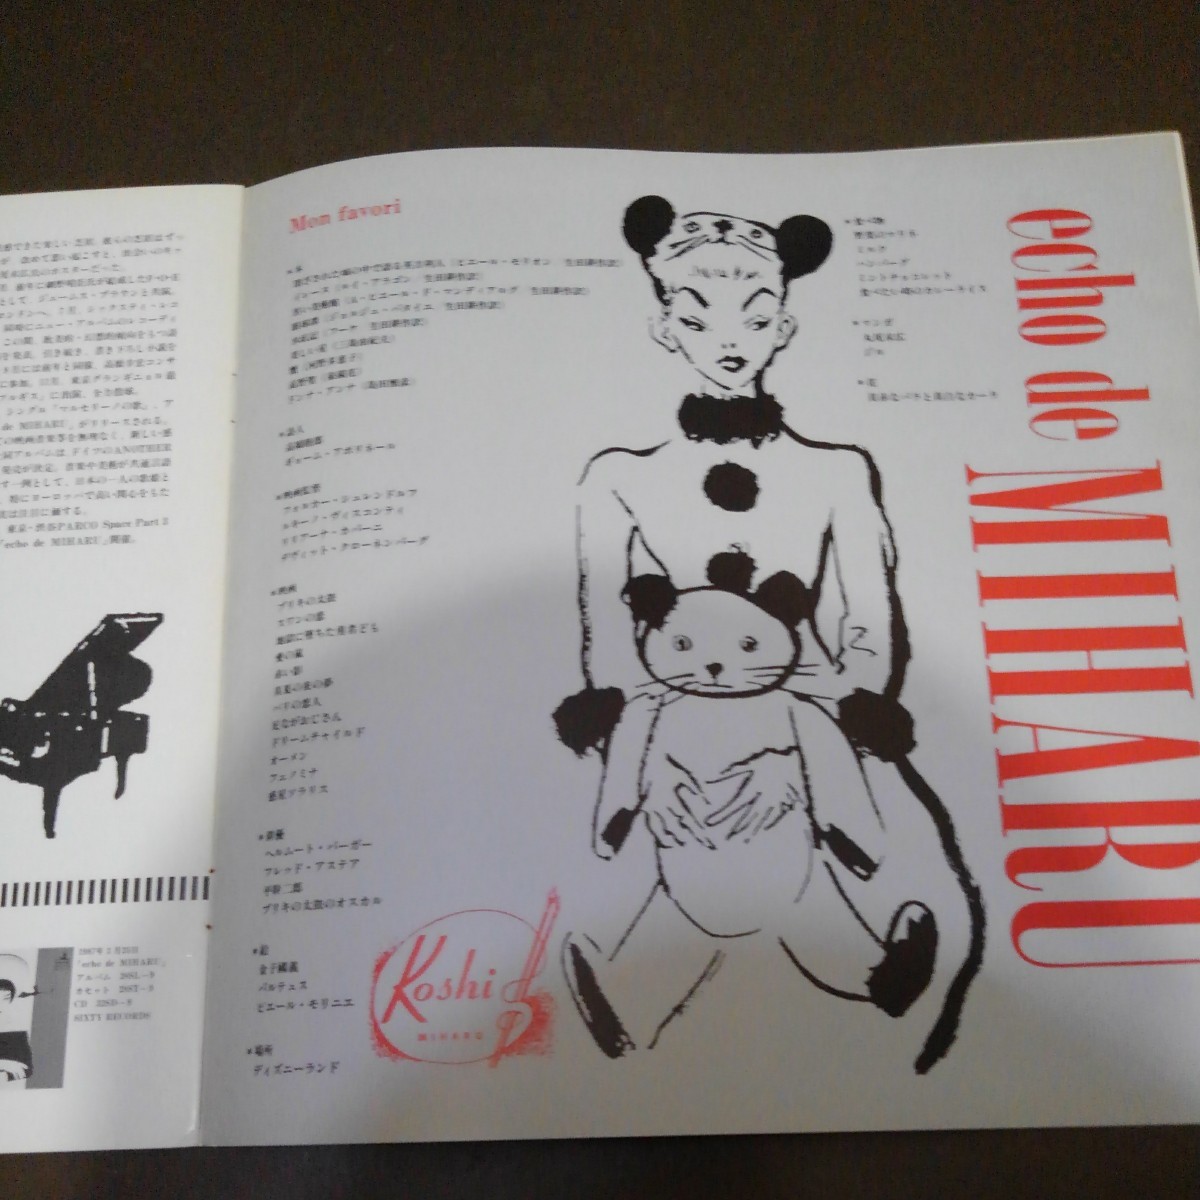 コシミハル　ツアーパンフレット　1987年　金子國義　細野晴臣とコシのケンダン掲載　表紙は金子　イラストは赤木仁　30センチのサイズ_画像7